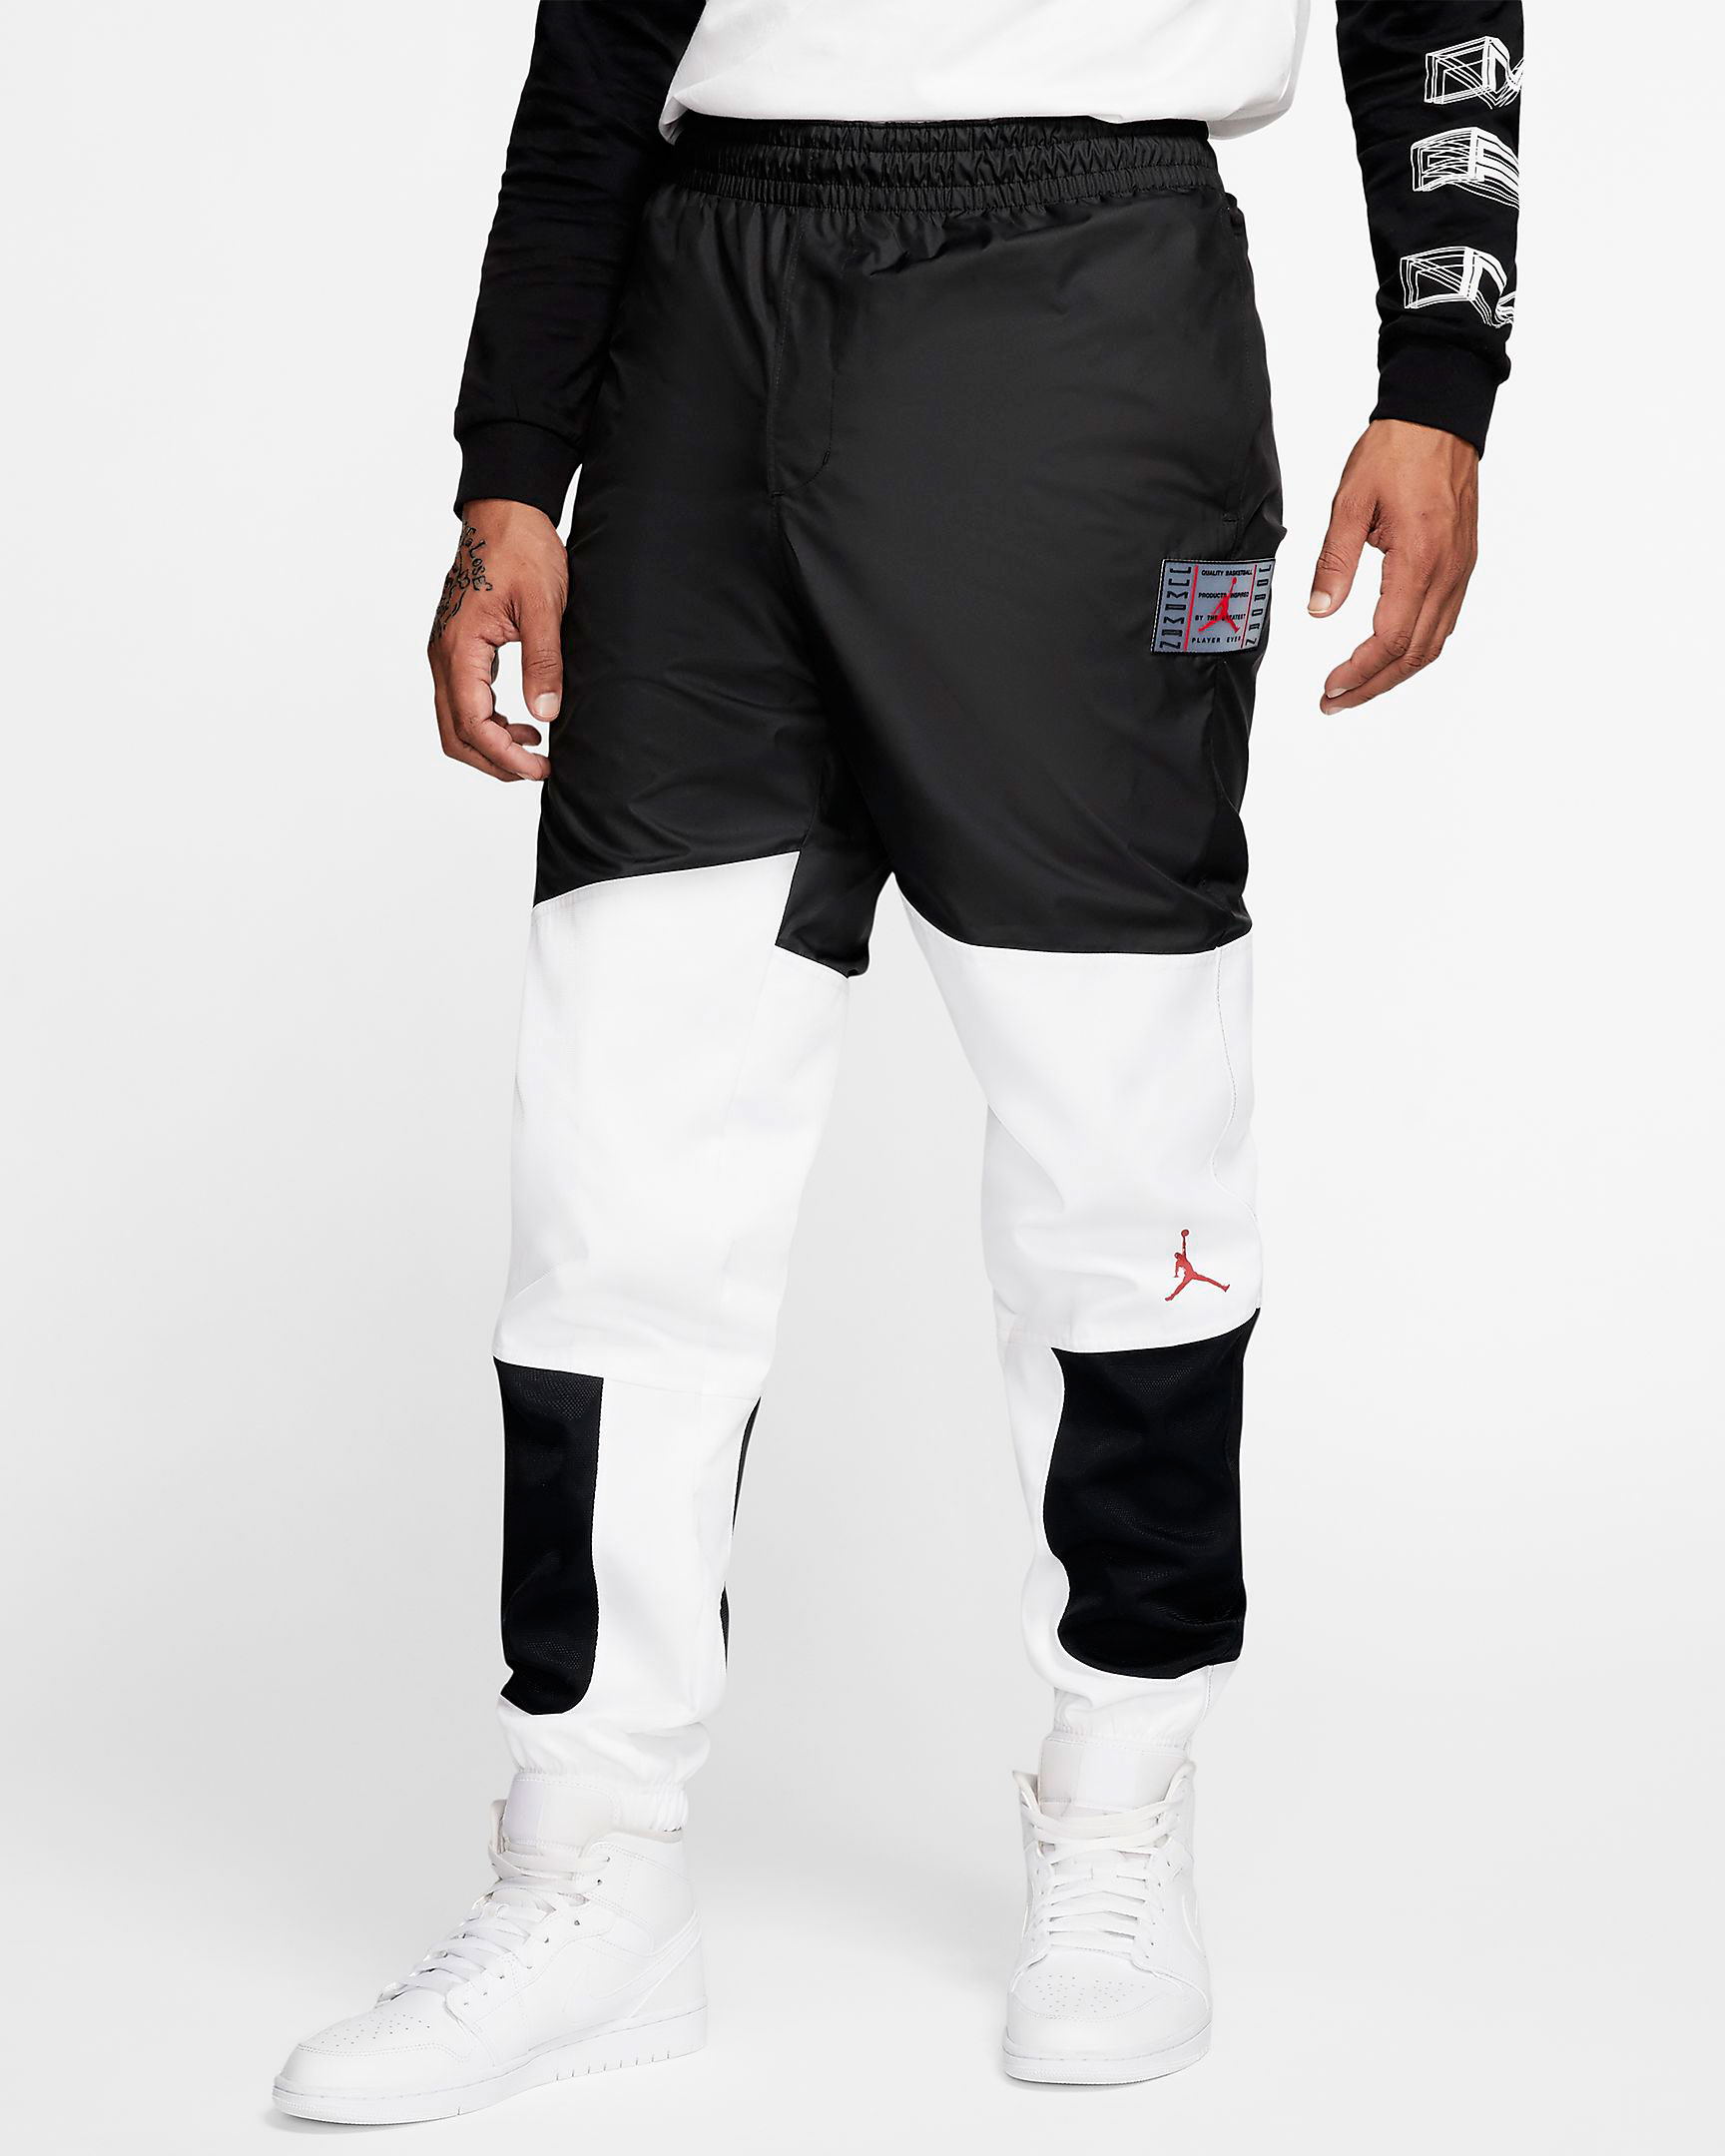 Air Jordan 11 Bred 2019 Pants 